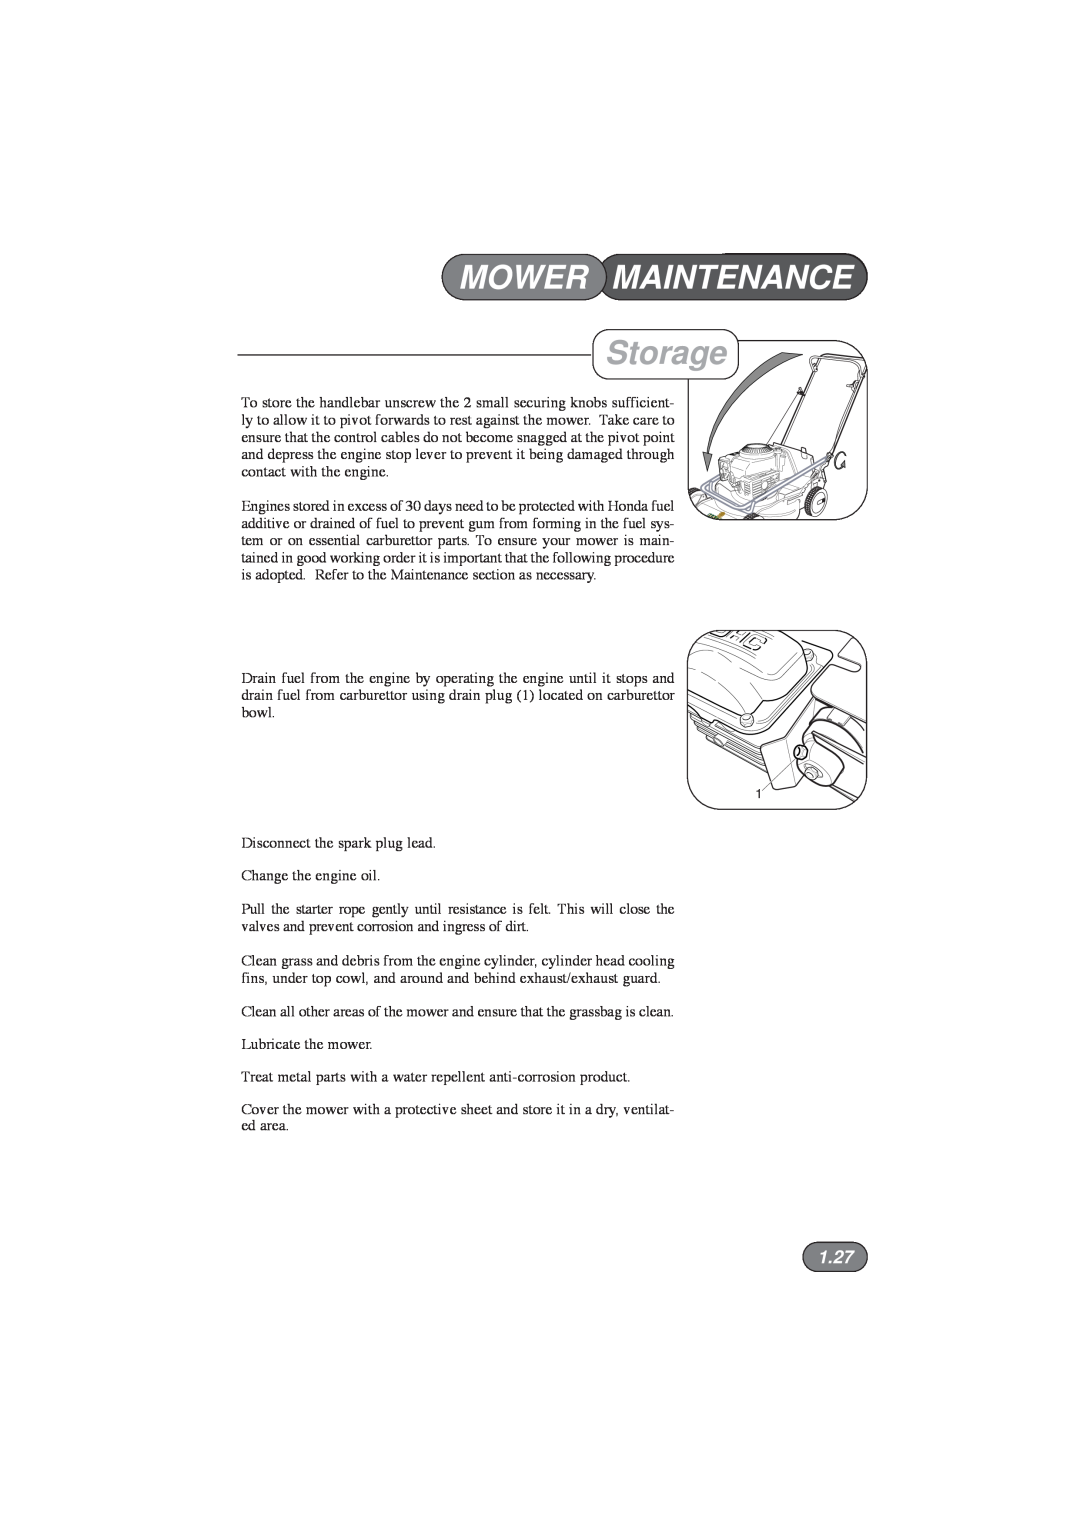 Hayter Mowers 433E, 435E, 432E, 434E manual Storage, 1.27, Mower Maintenance 